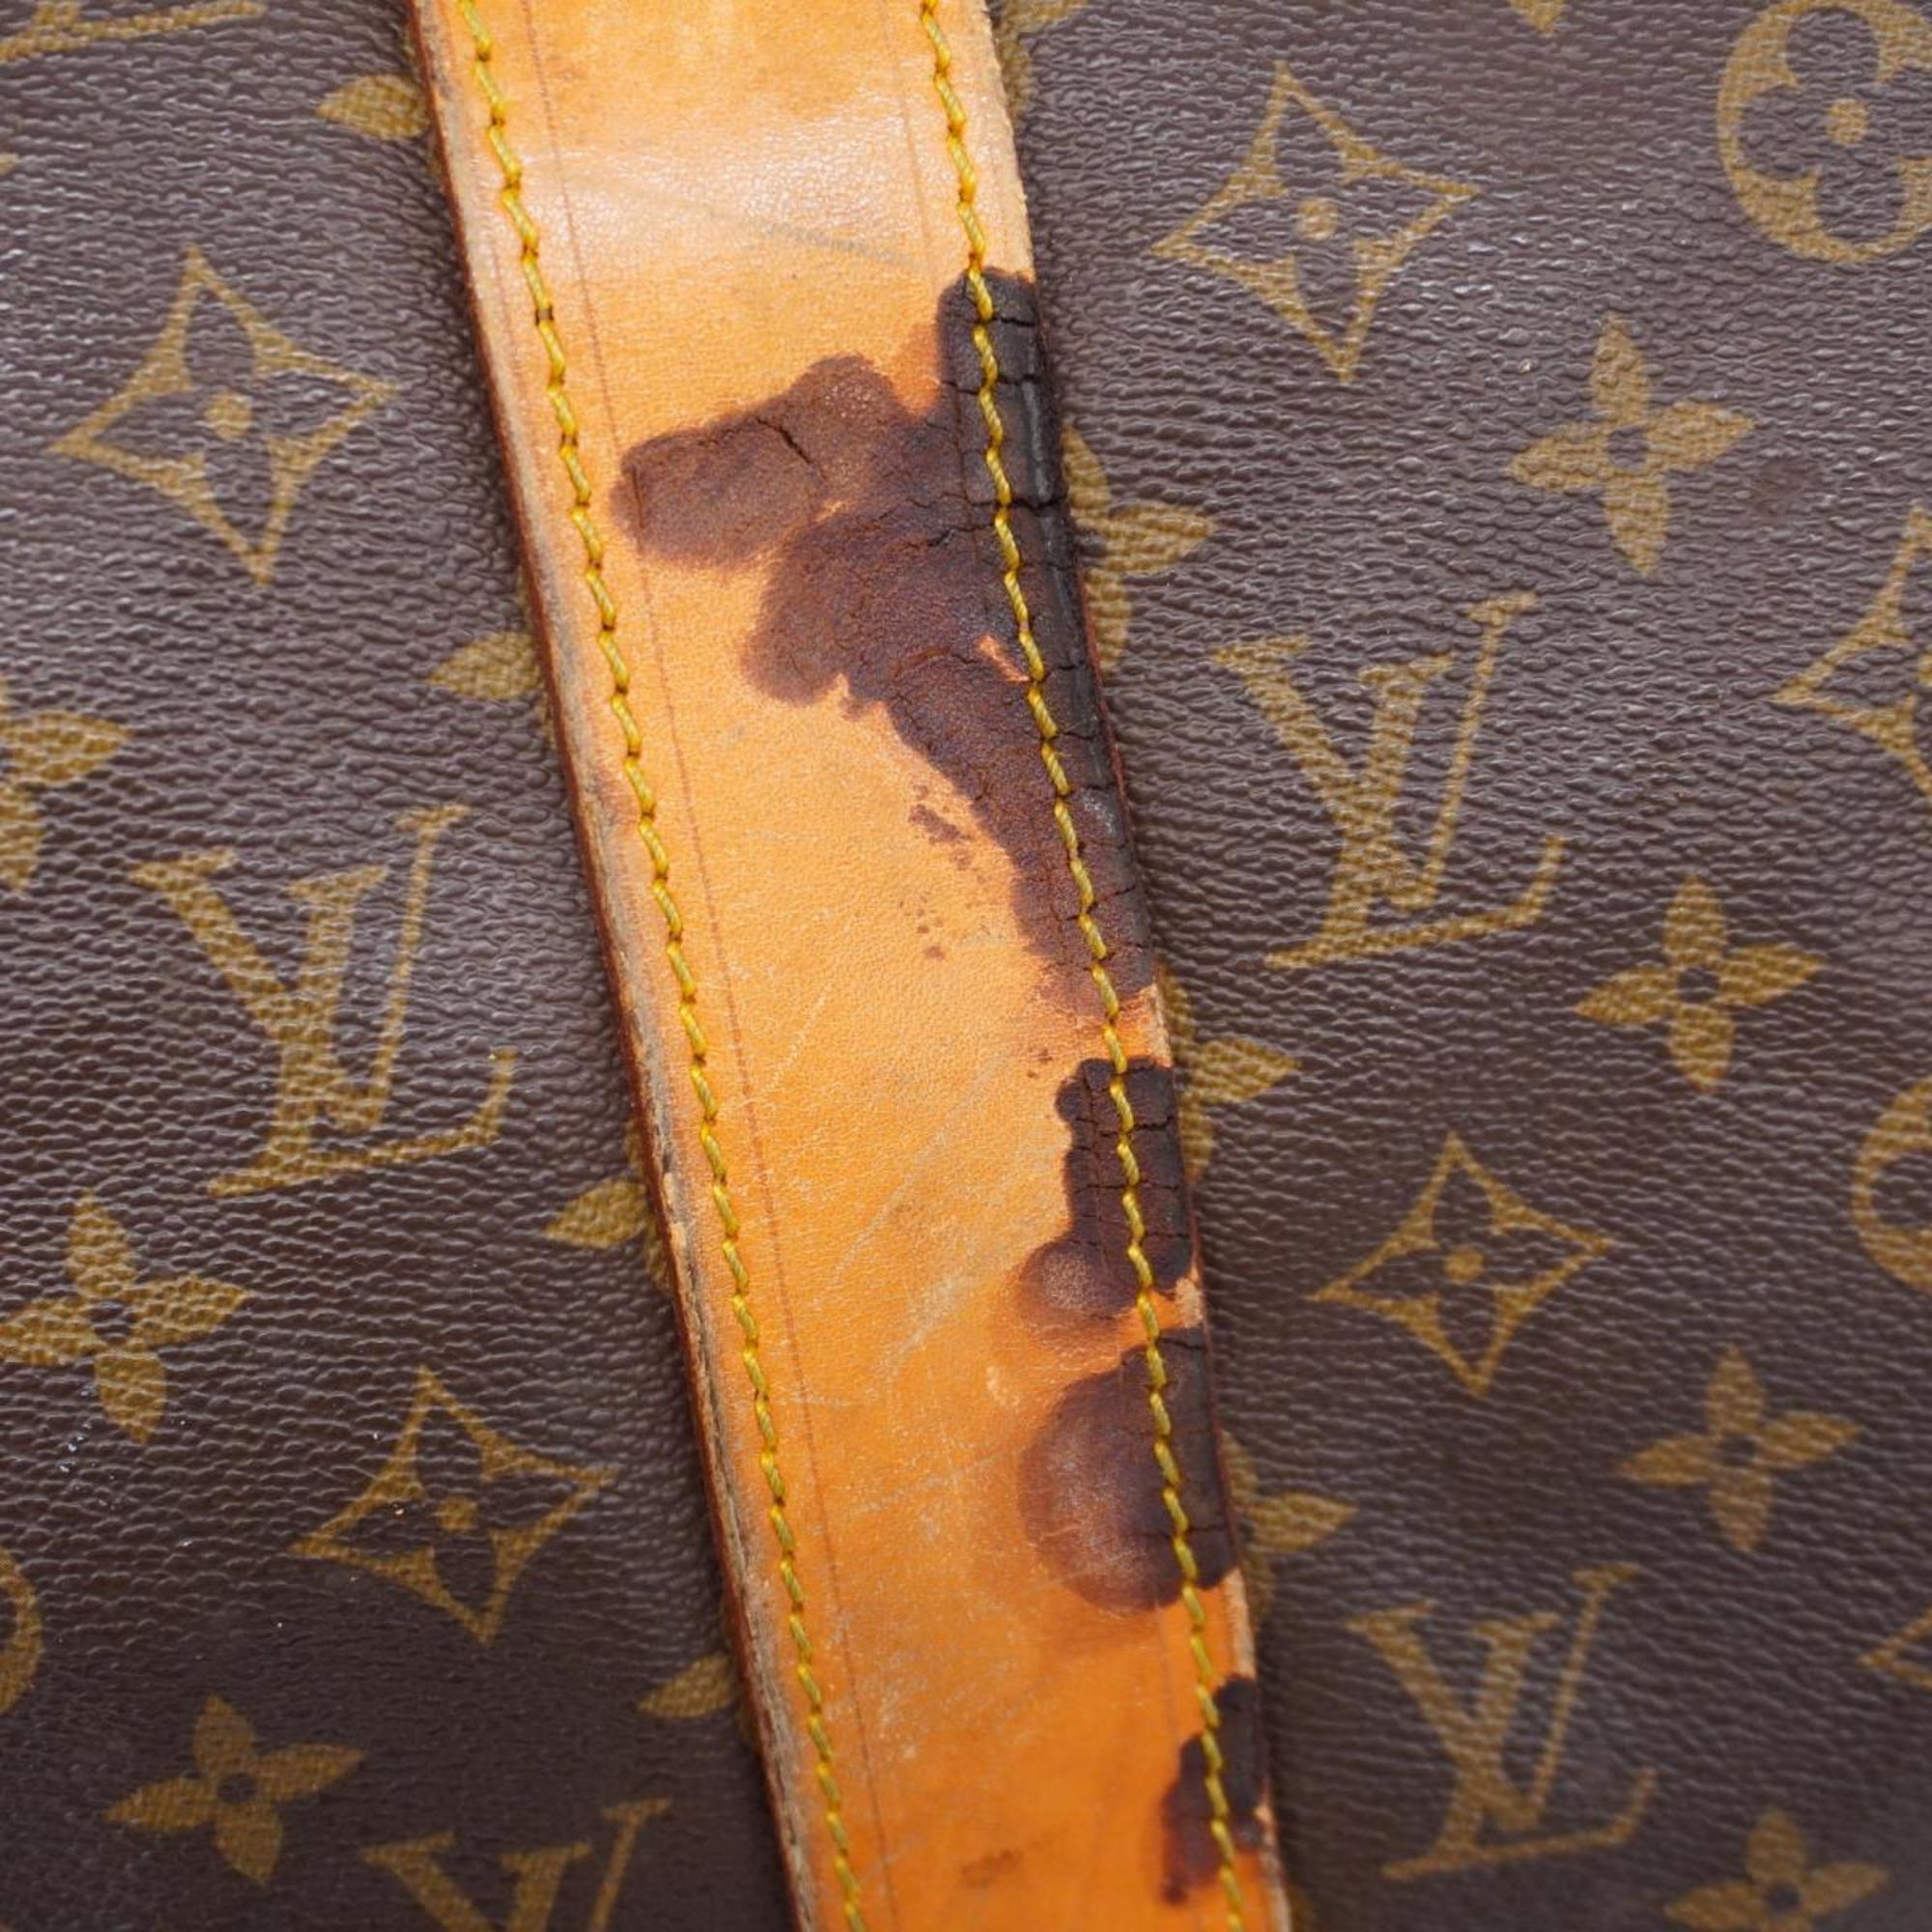 Louis Vuitton Boston Bag Monogram Sac Polochon 70 M41220 Brown Men's Women's